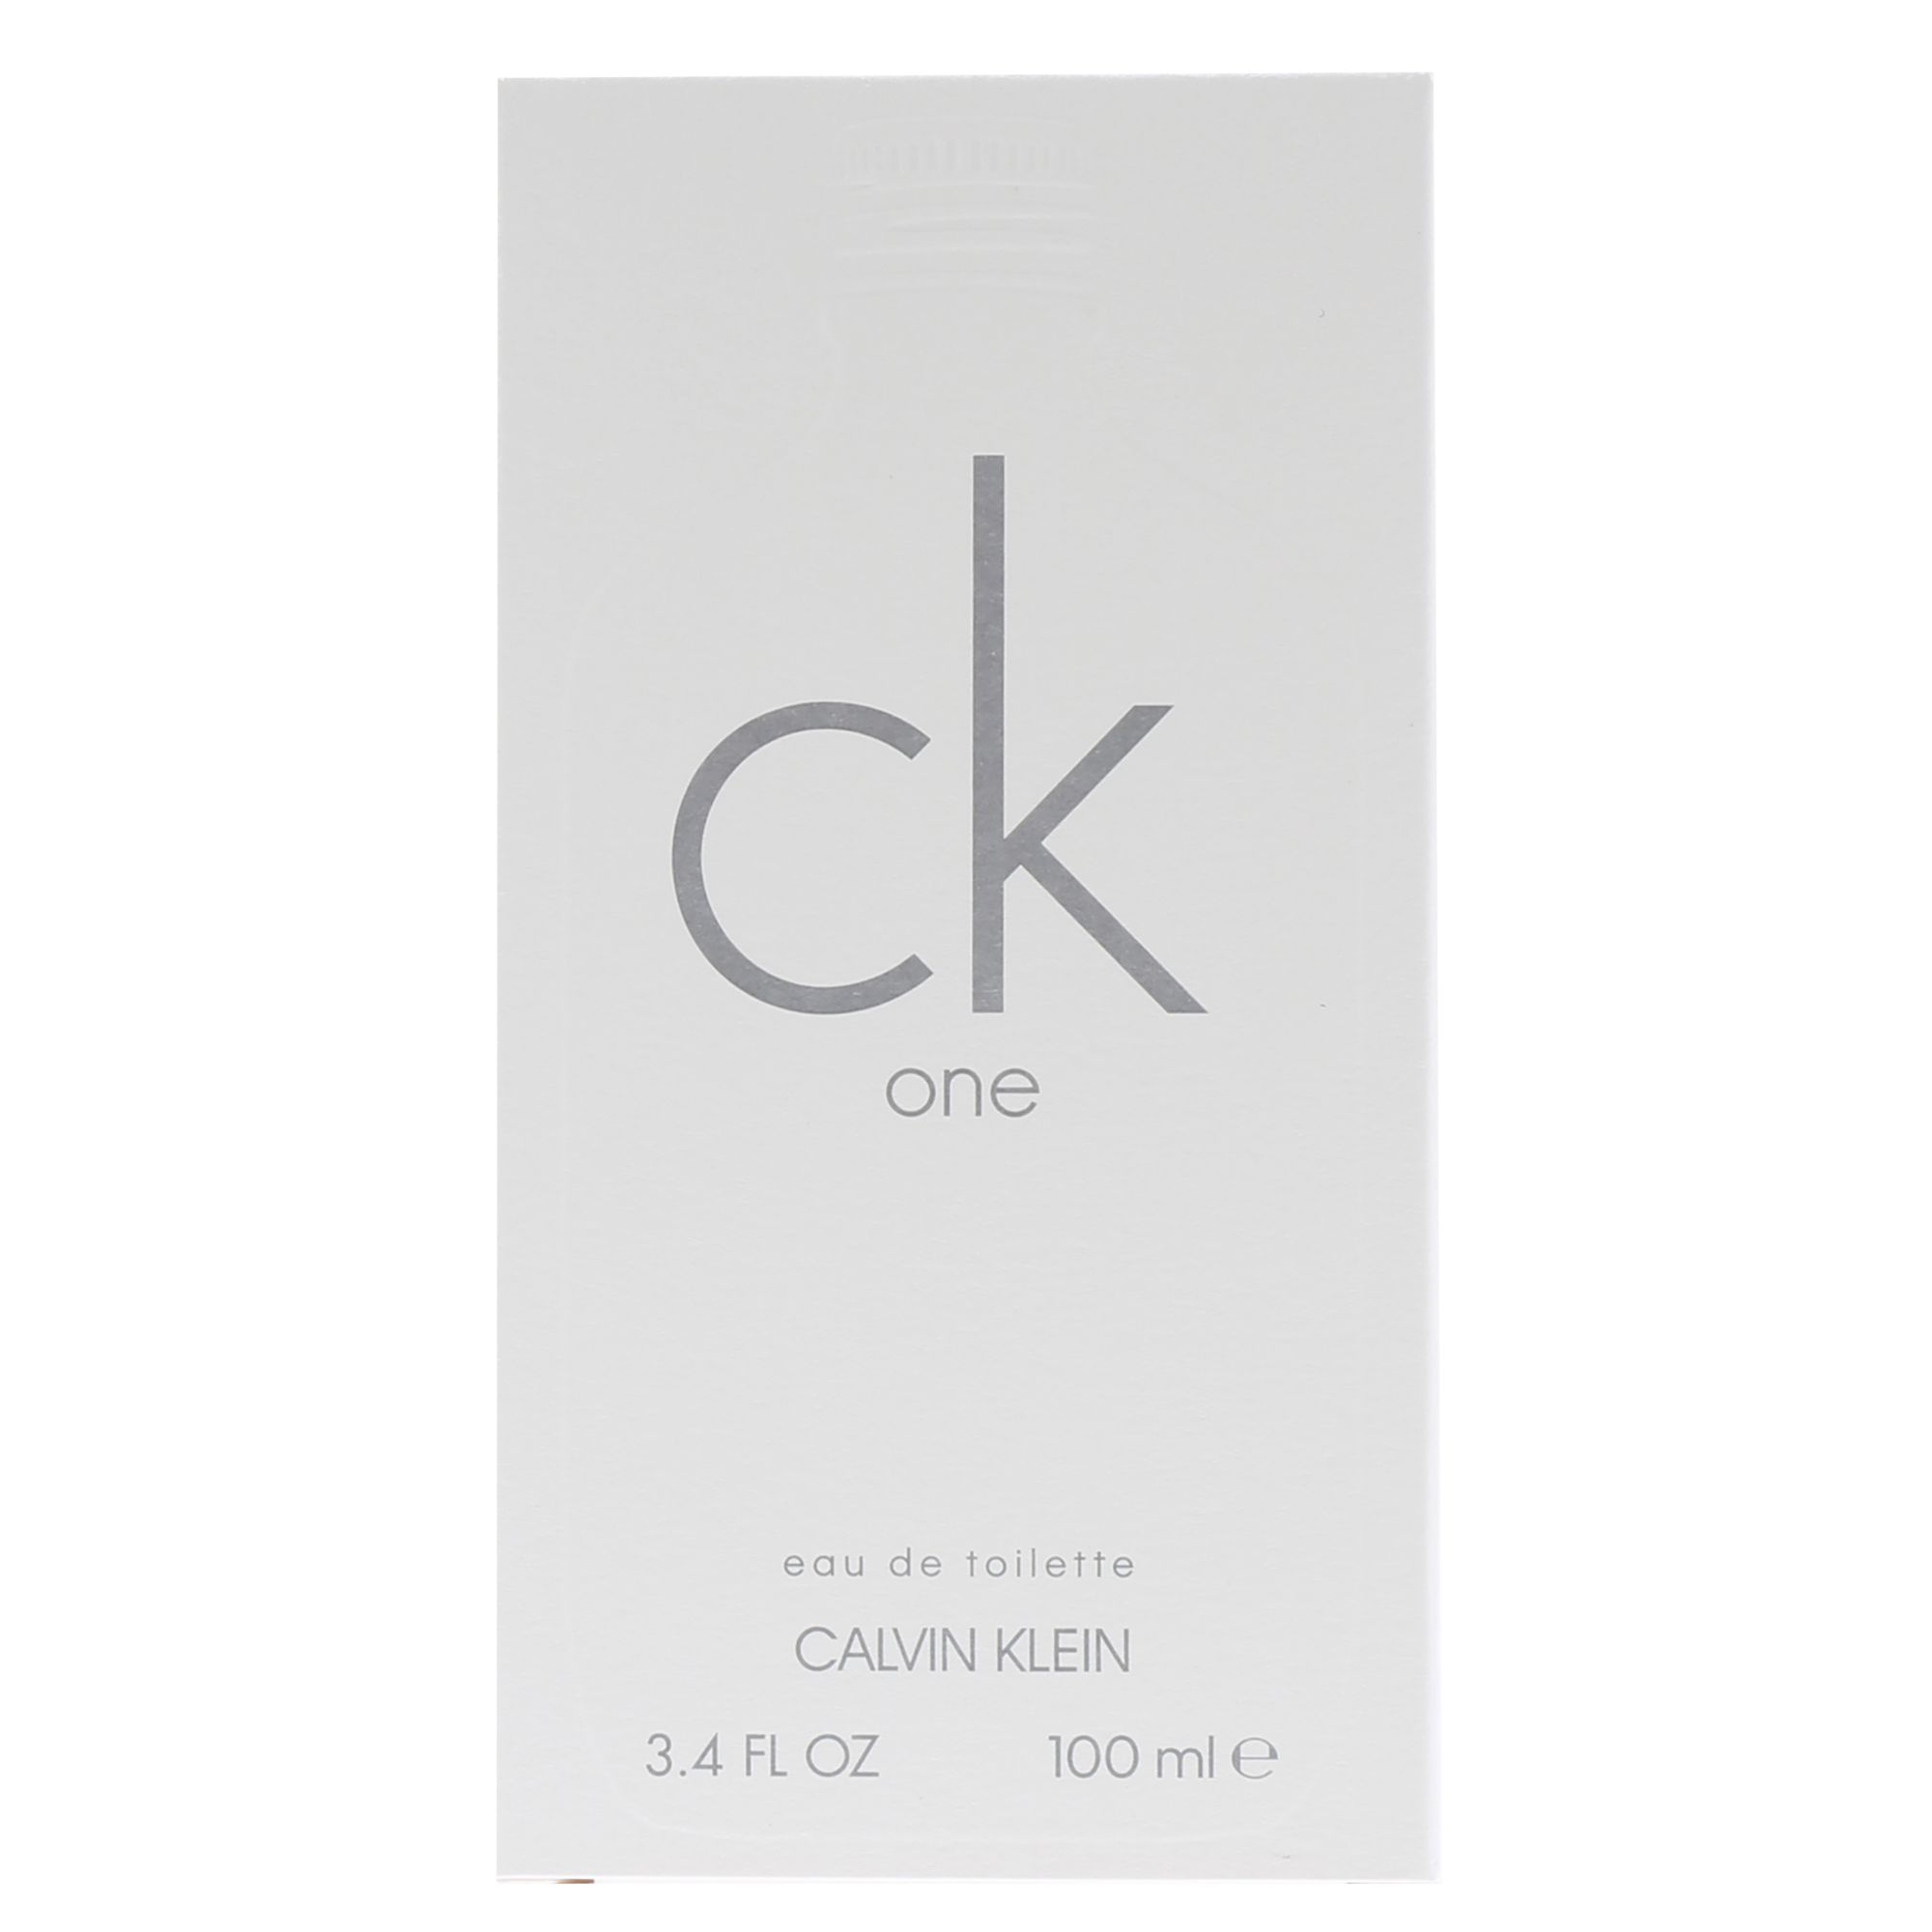 Calvin Klein One Eau de Toilette Spray, 3.4 oz.